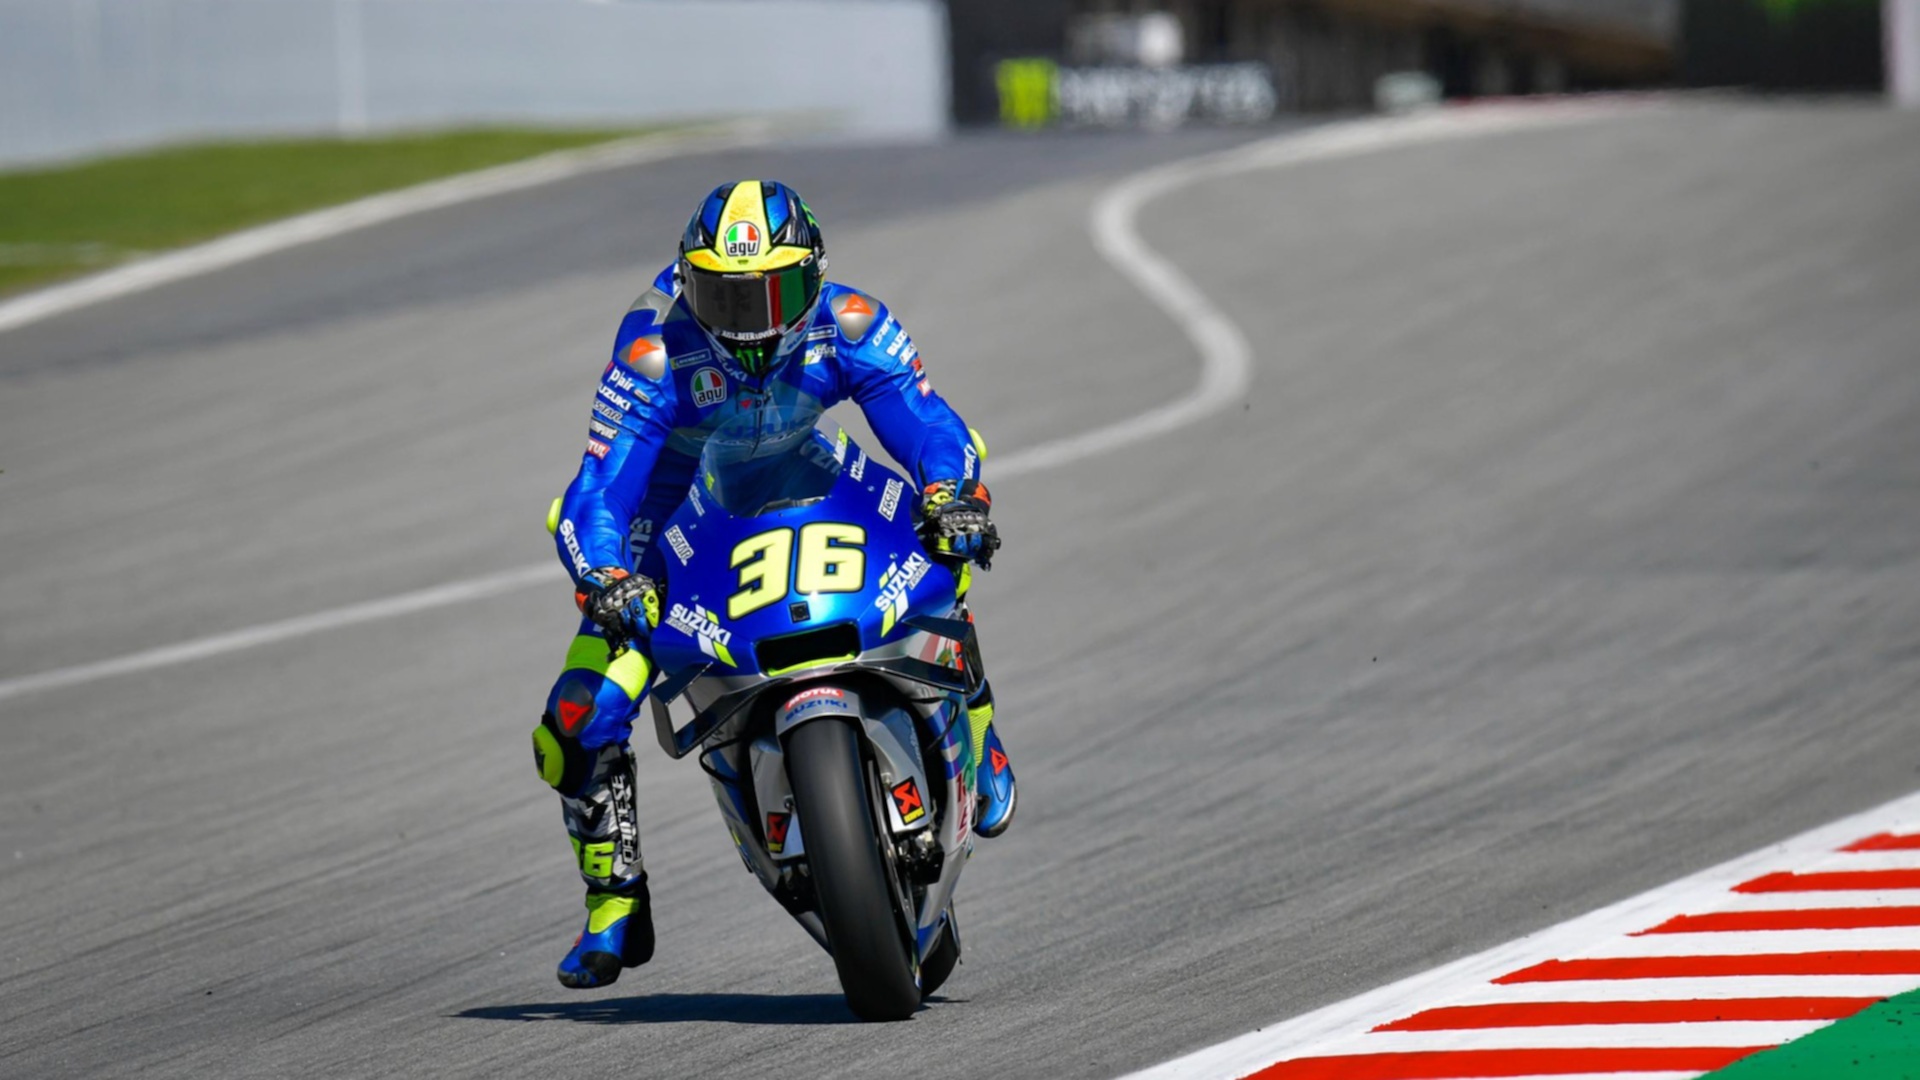 MotoGP 2020] Dù chiếc Suzuki không nhanh nhưng Joan Mir vẫn có khả năng vô  địch | Otosaigon